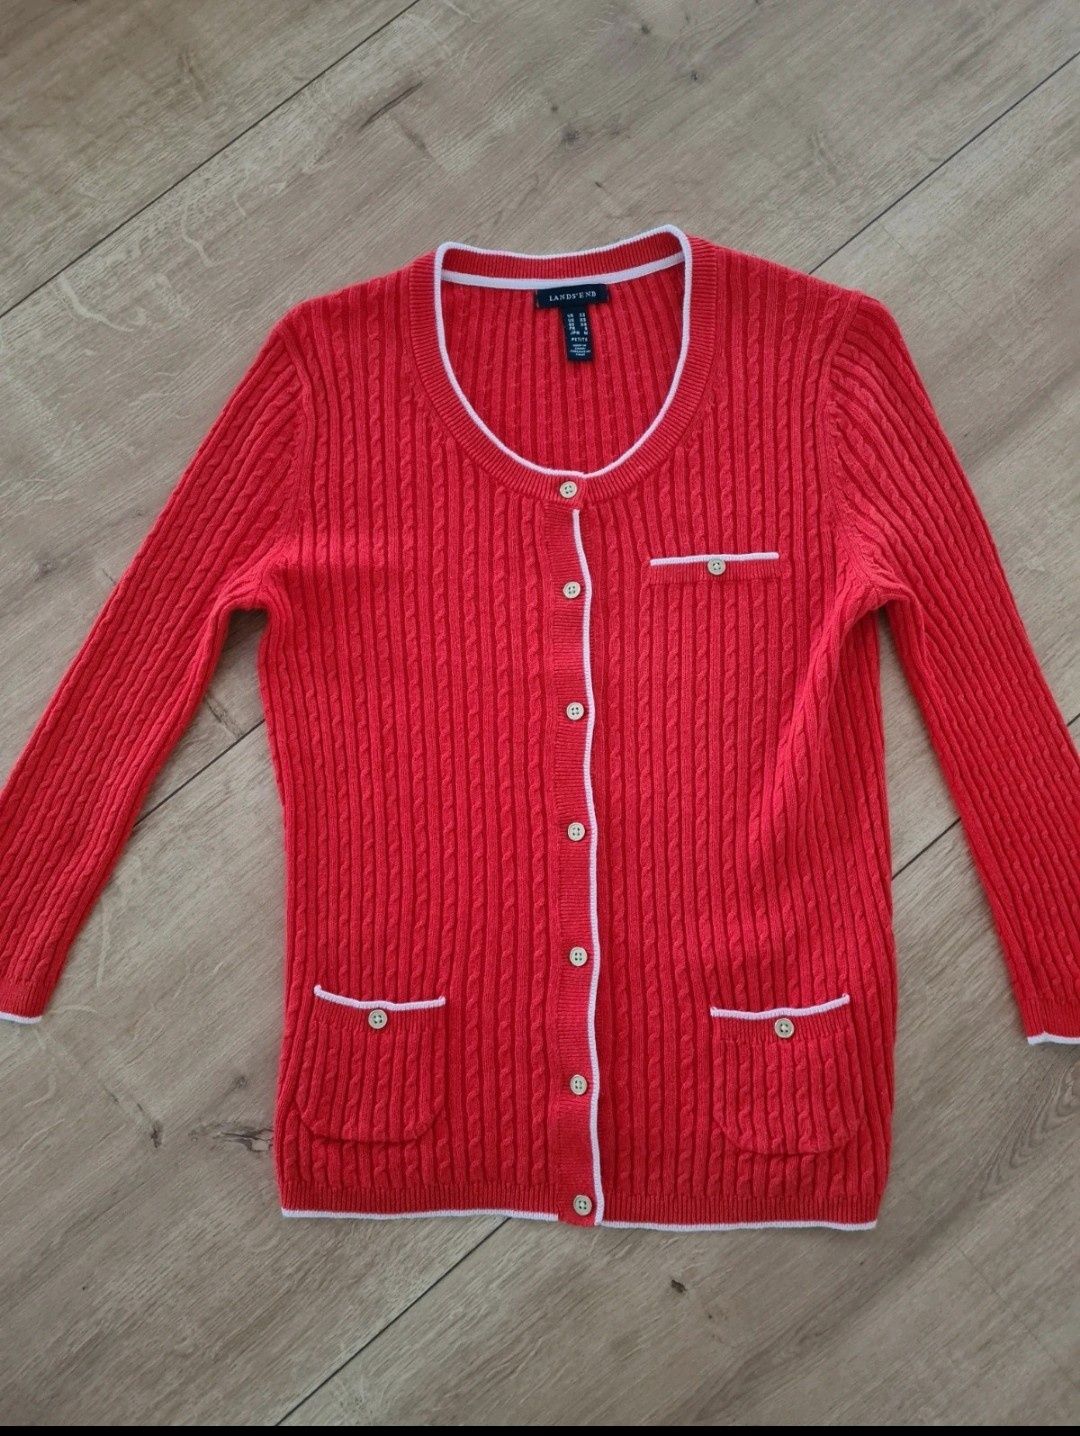 Sweter czerwony 55% Len i 45% Cotton. Warkoczowy wzór. Rozmiar XS / S